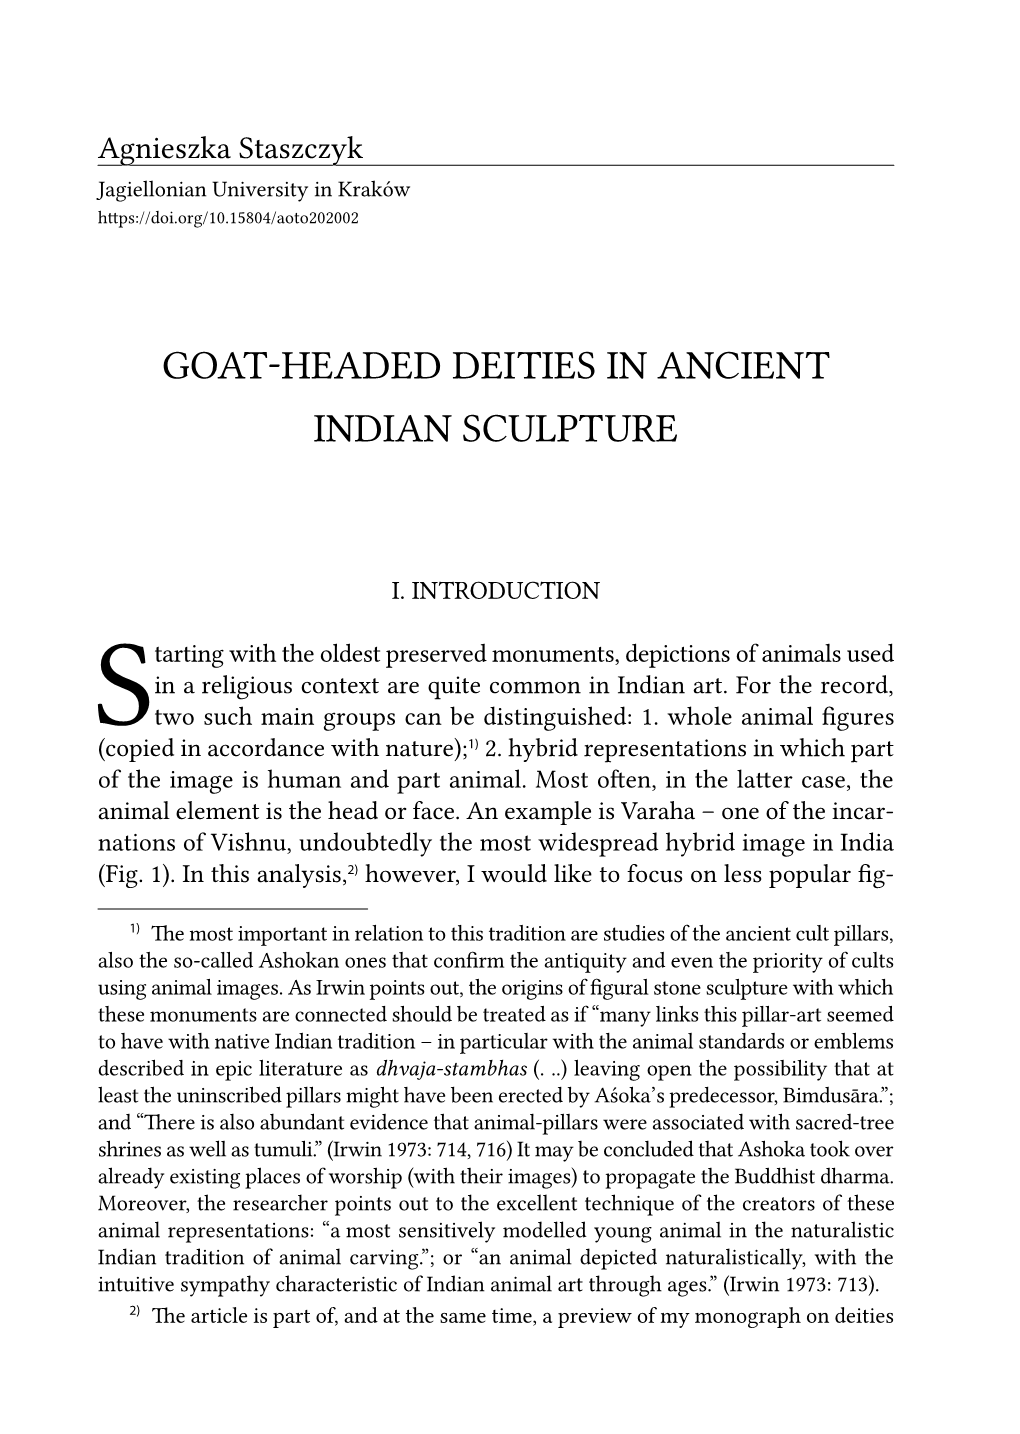 Goat-Headed Deities in Ancient Indian Sculpture